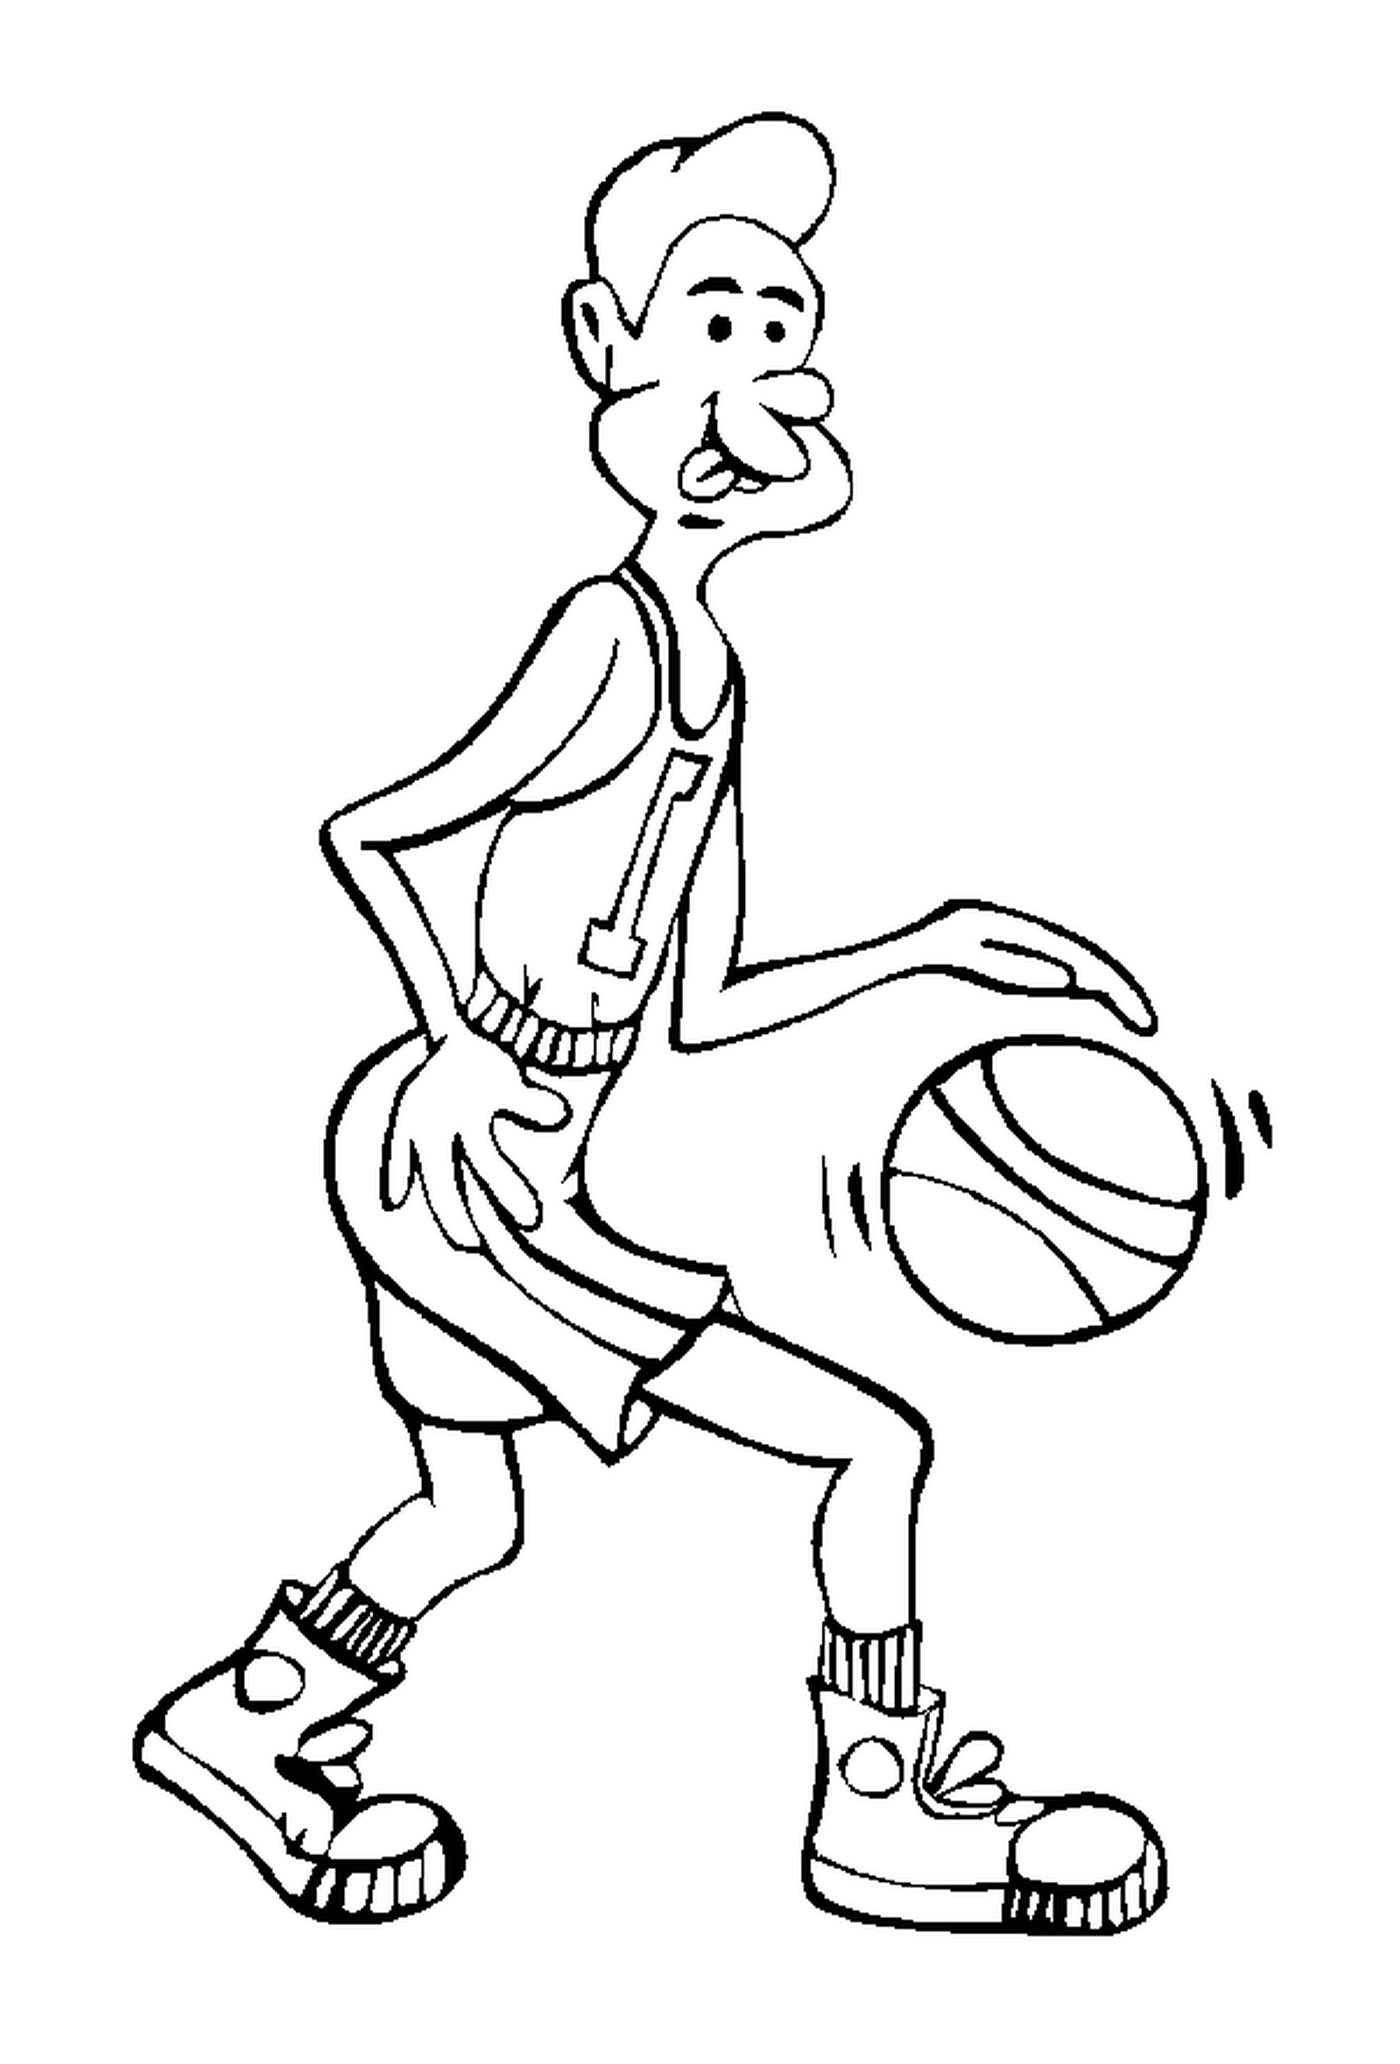  Un jugador de baloncesto sostiene una pelota 